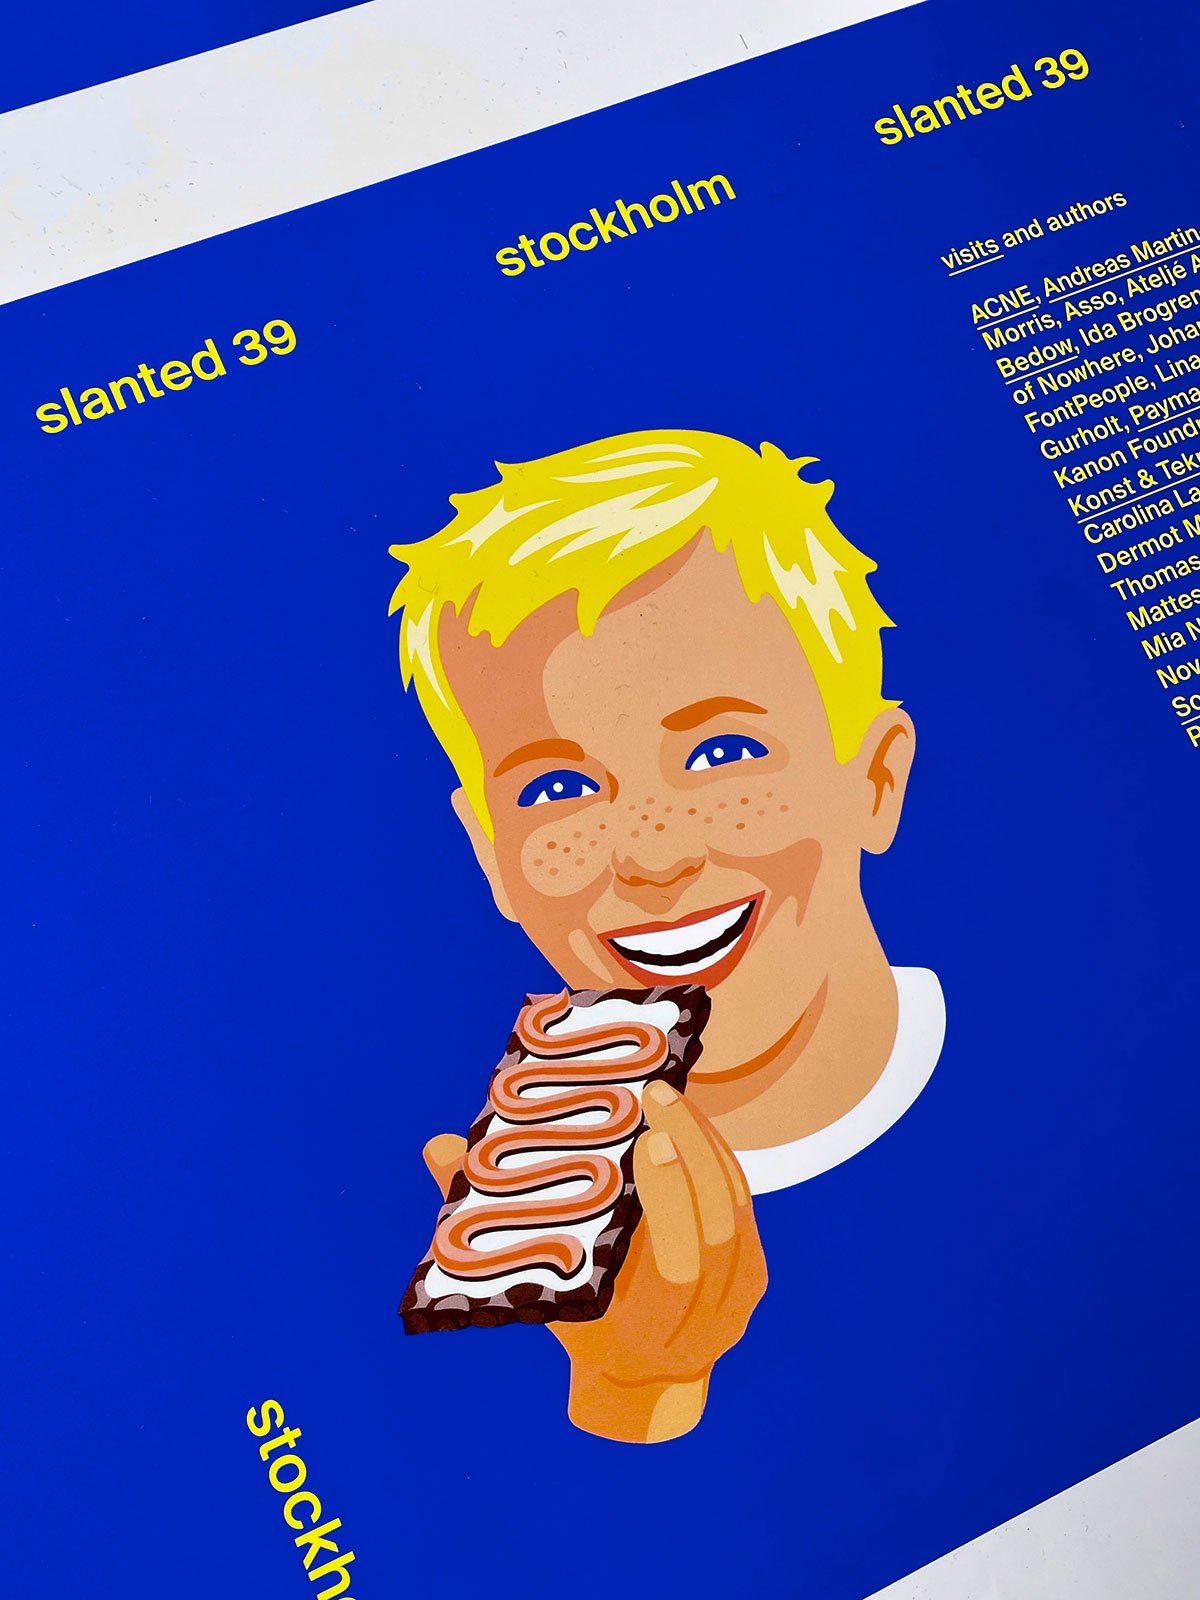 Slanted Magazine #39—Stockholm Making Of